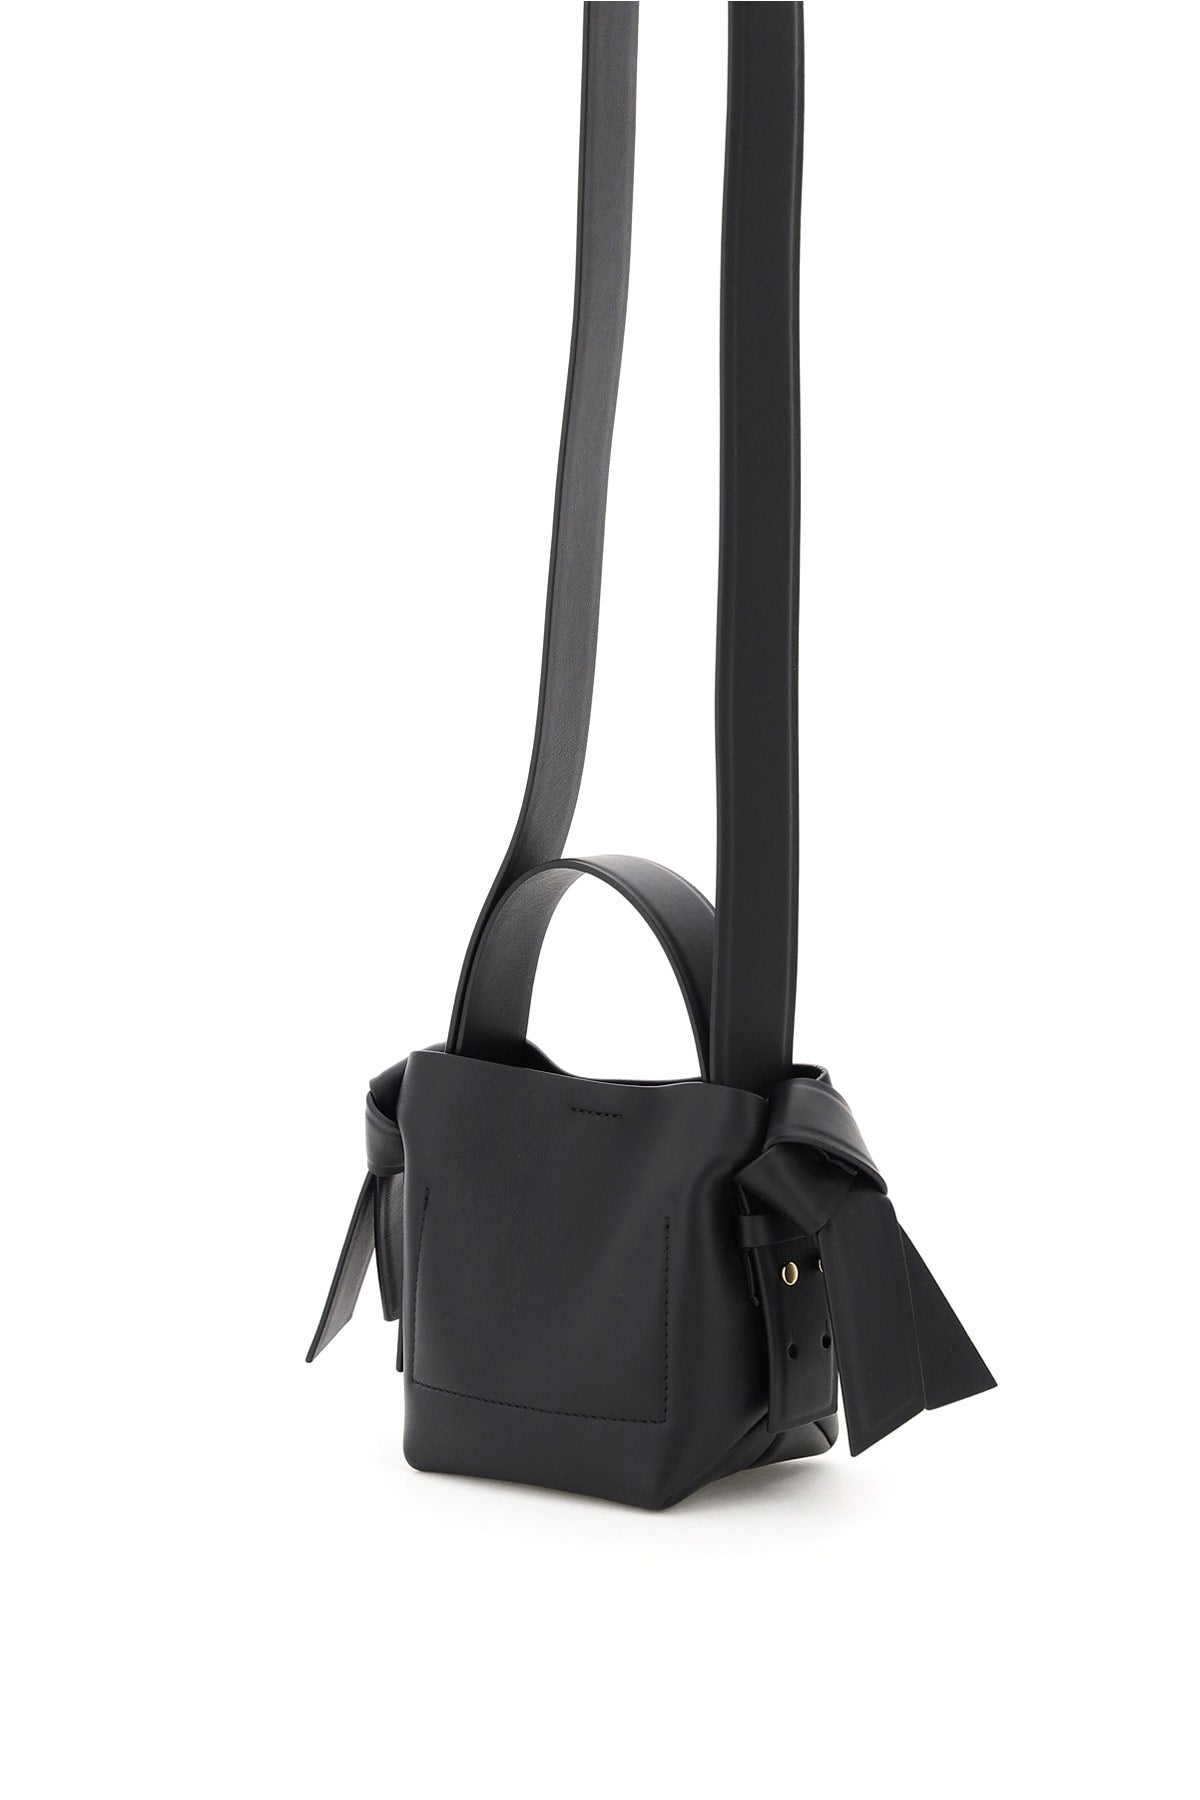 ACNE STUDIOS Black Leather Micro Musubi Tote Handbag for Women